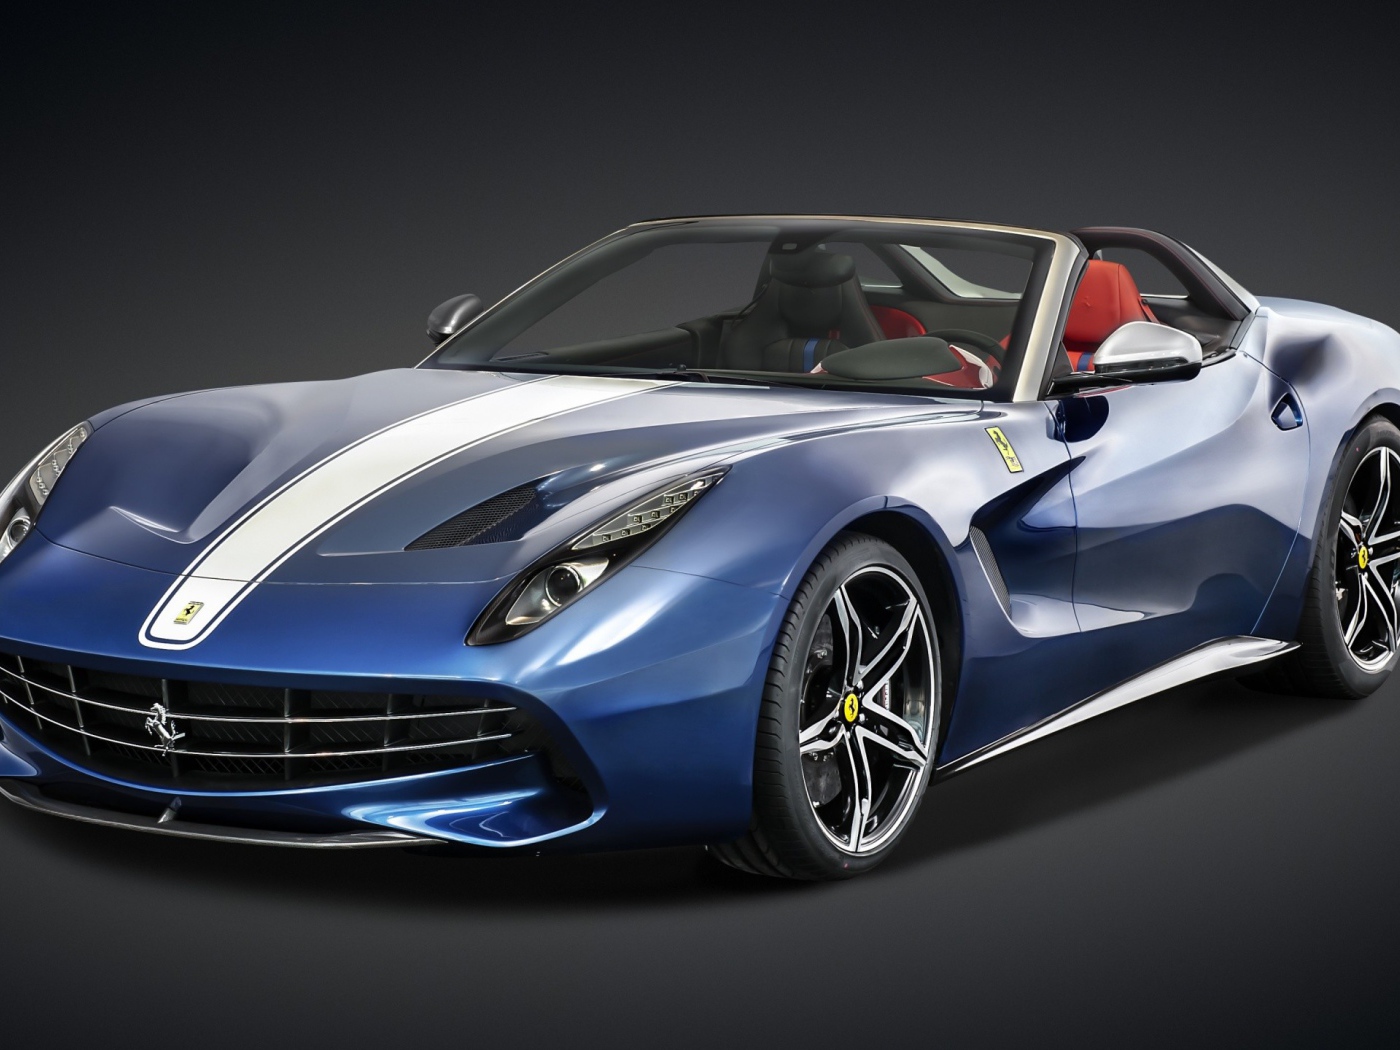 Stylish blue sports car Ferrari F60 America